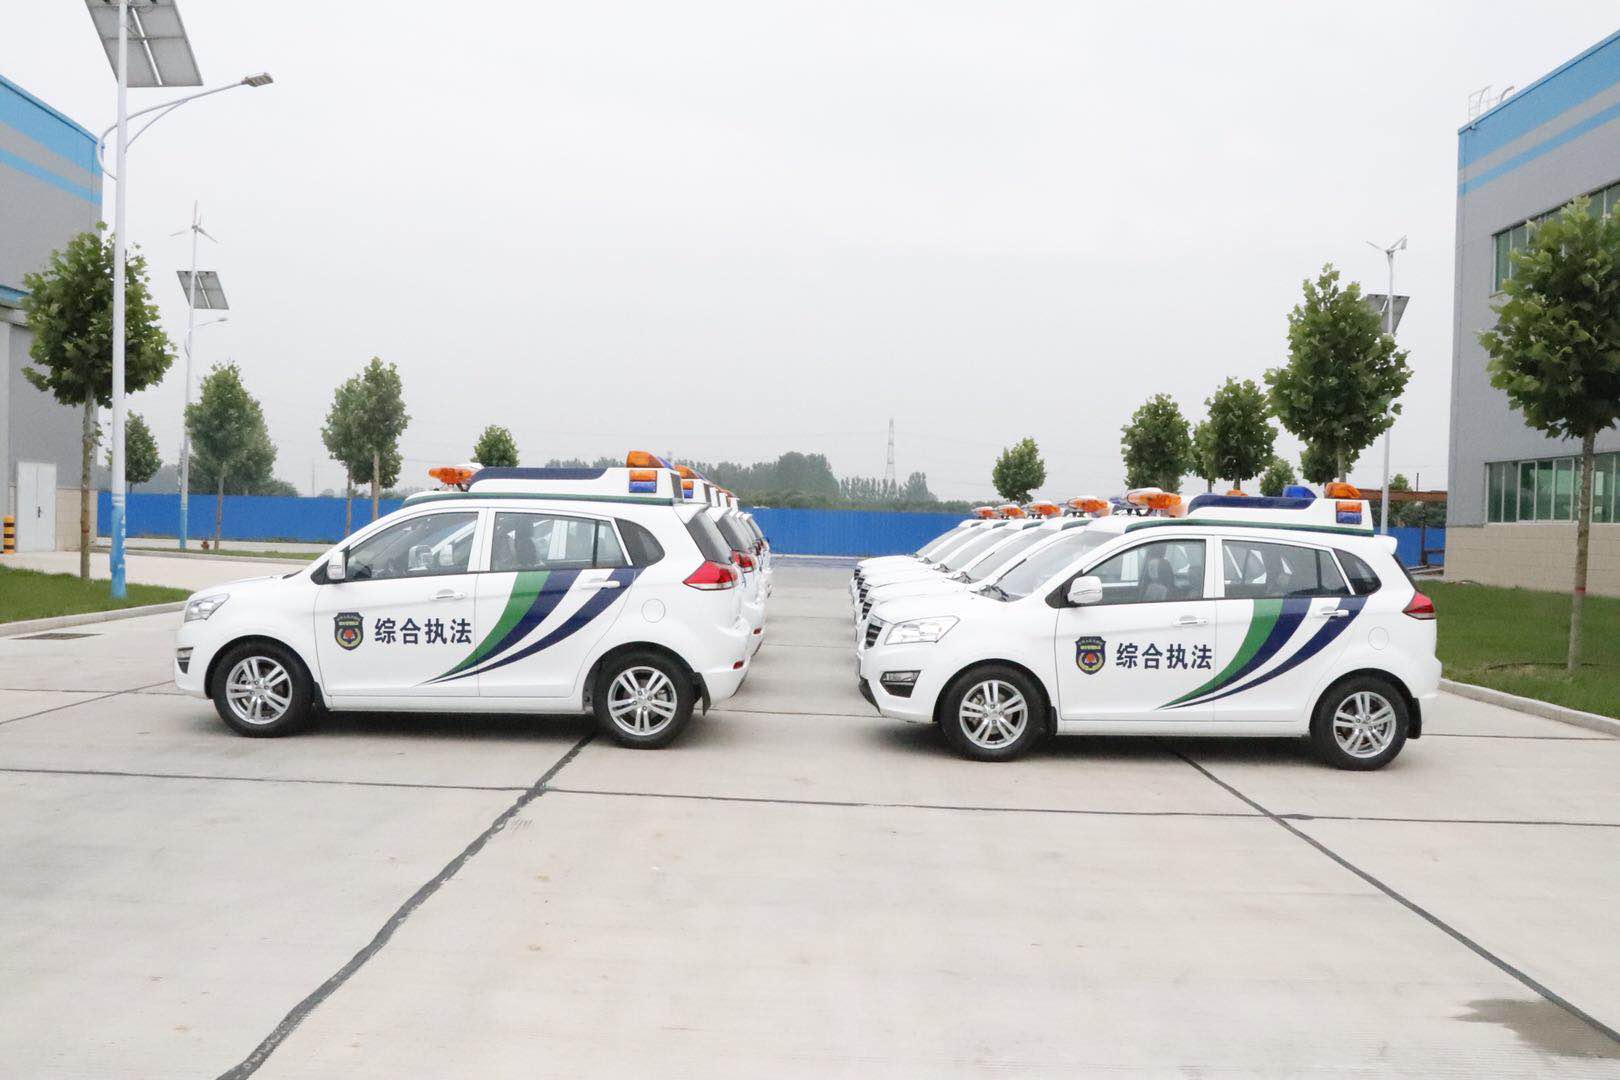 山西兴县通过公安部警采中心采购11台SUV电动巡逻车(图3)